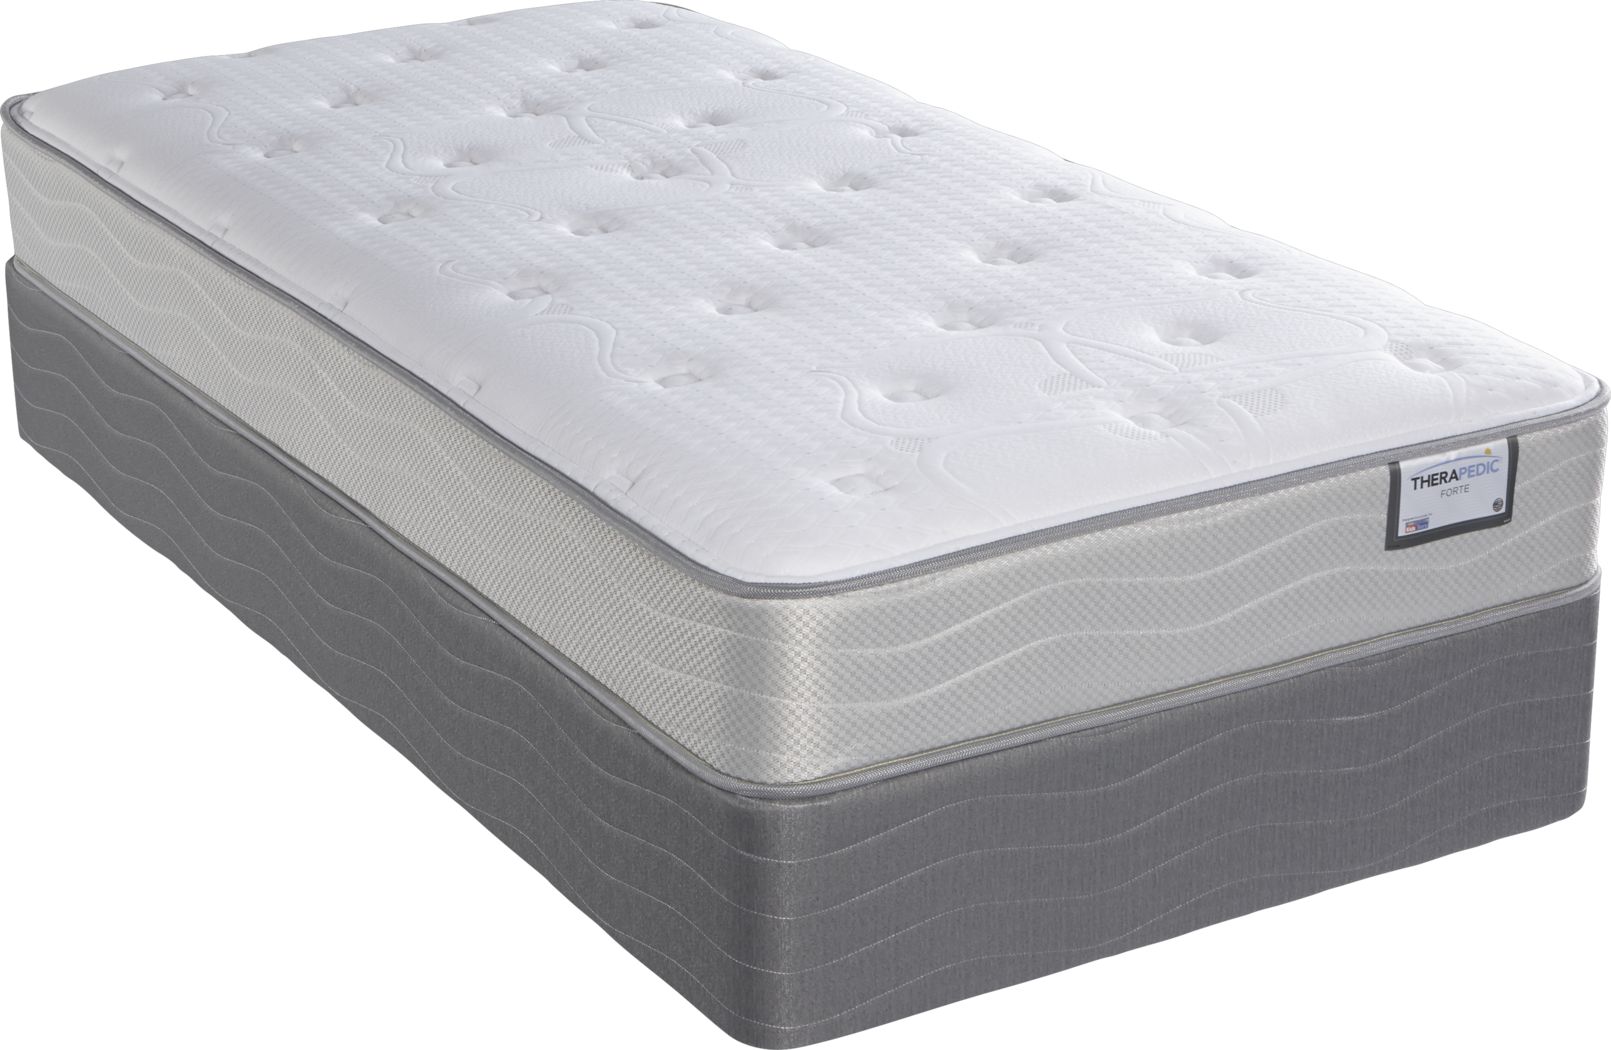 twin size therapeutic mattress